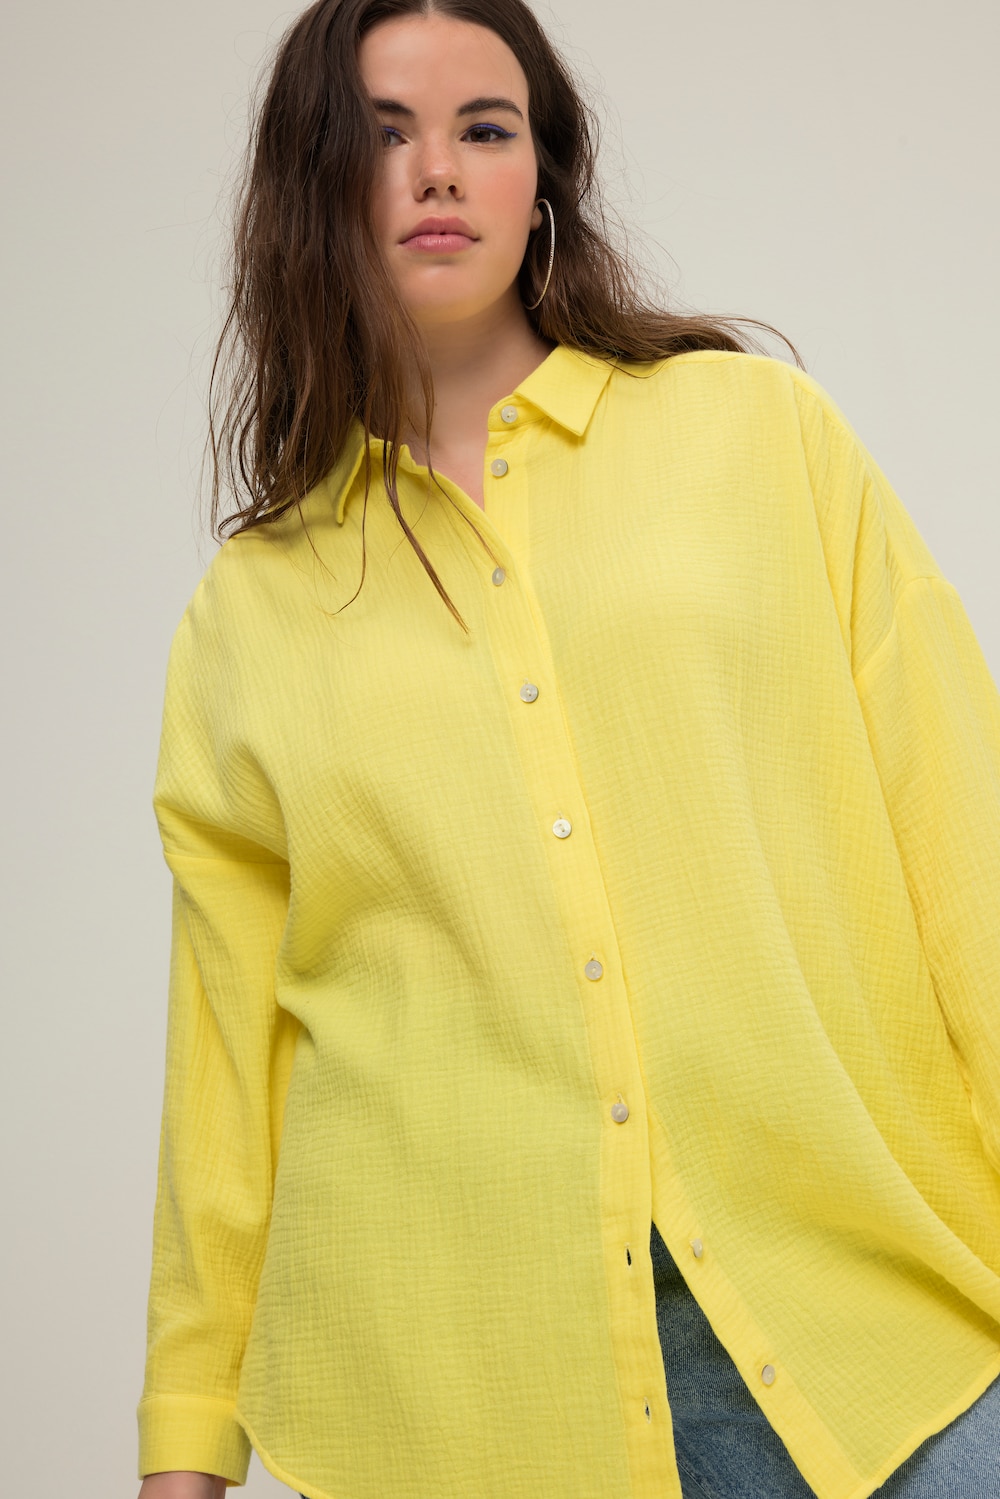 Grote Maten Mousseline blouse, Dames, geel, Maat: 46/48, Katoen, Studio Untold